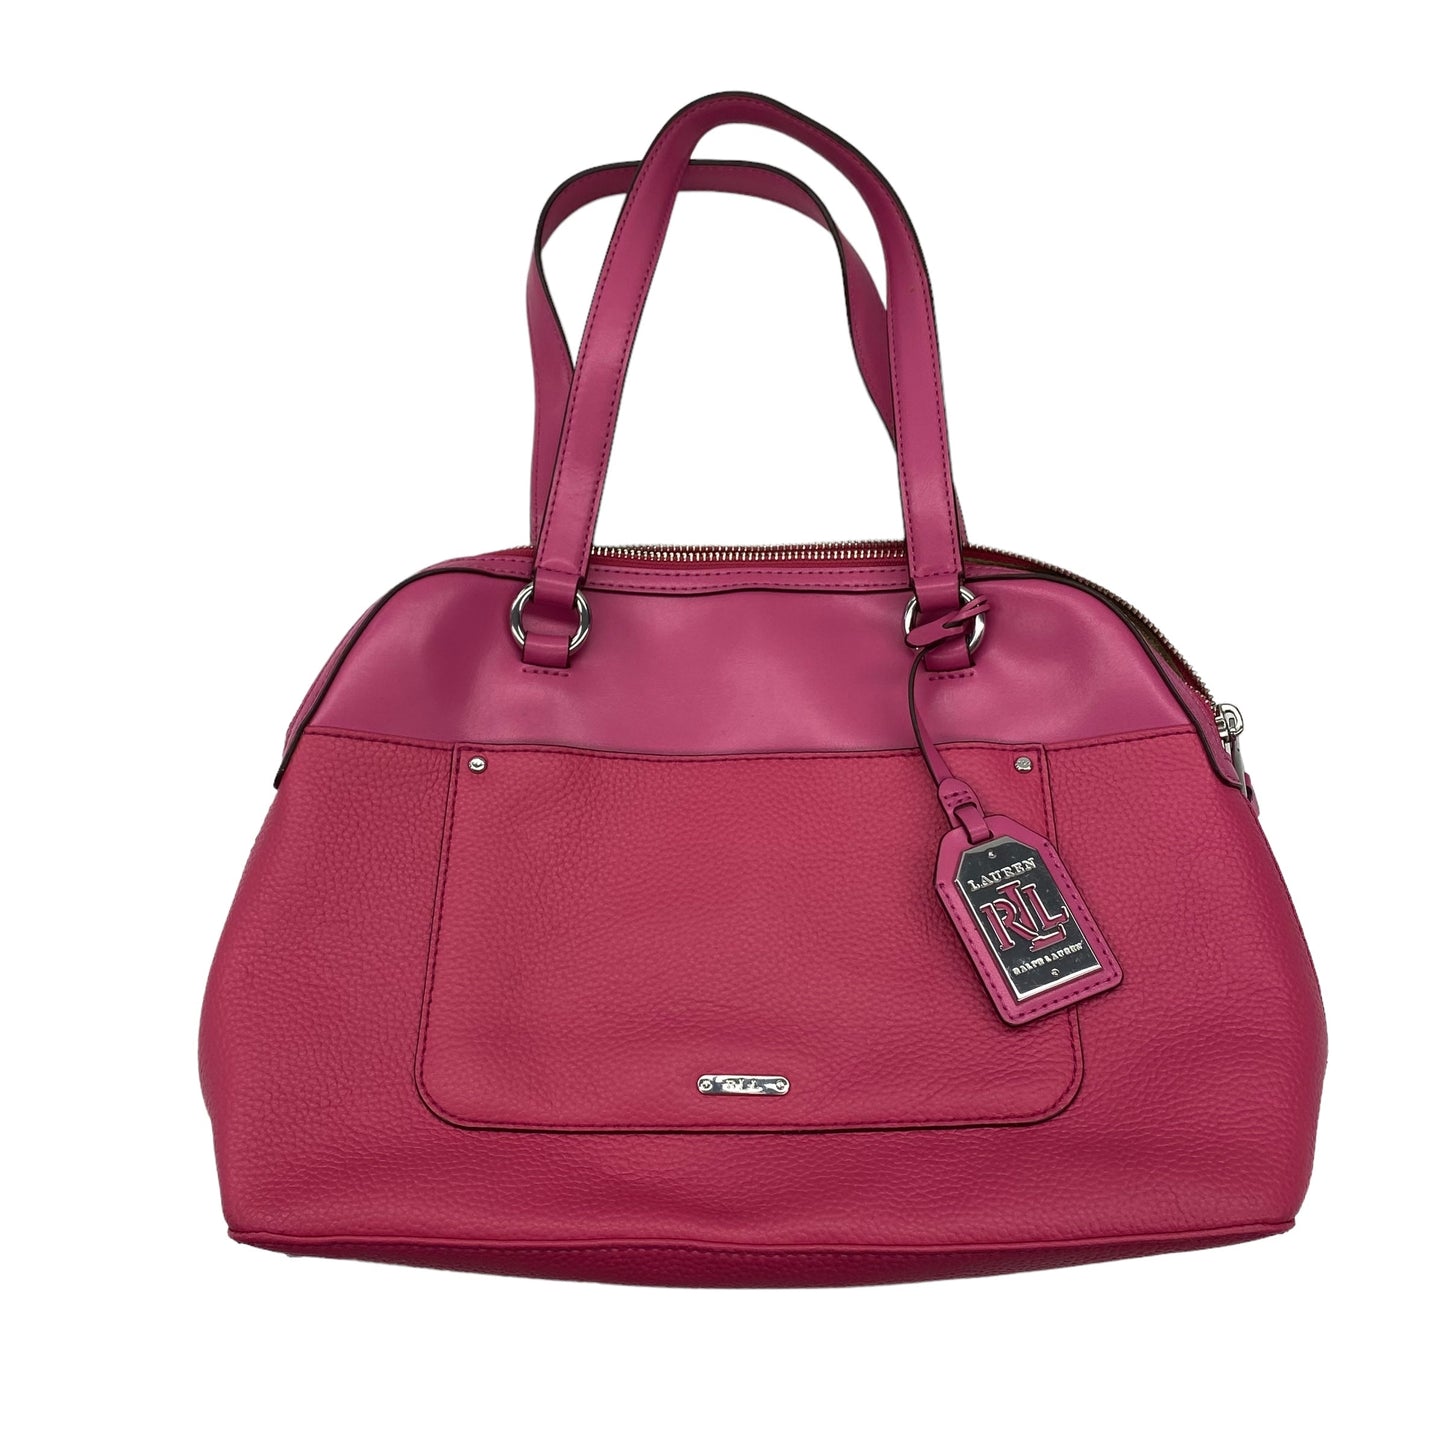 Handbag By Lauren By Ralph Lauren  Size: Medium